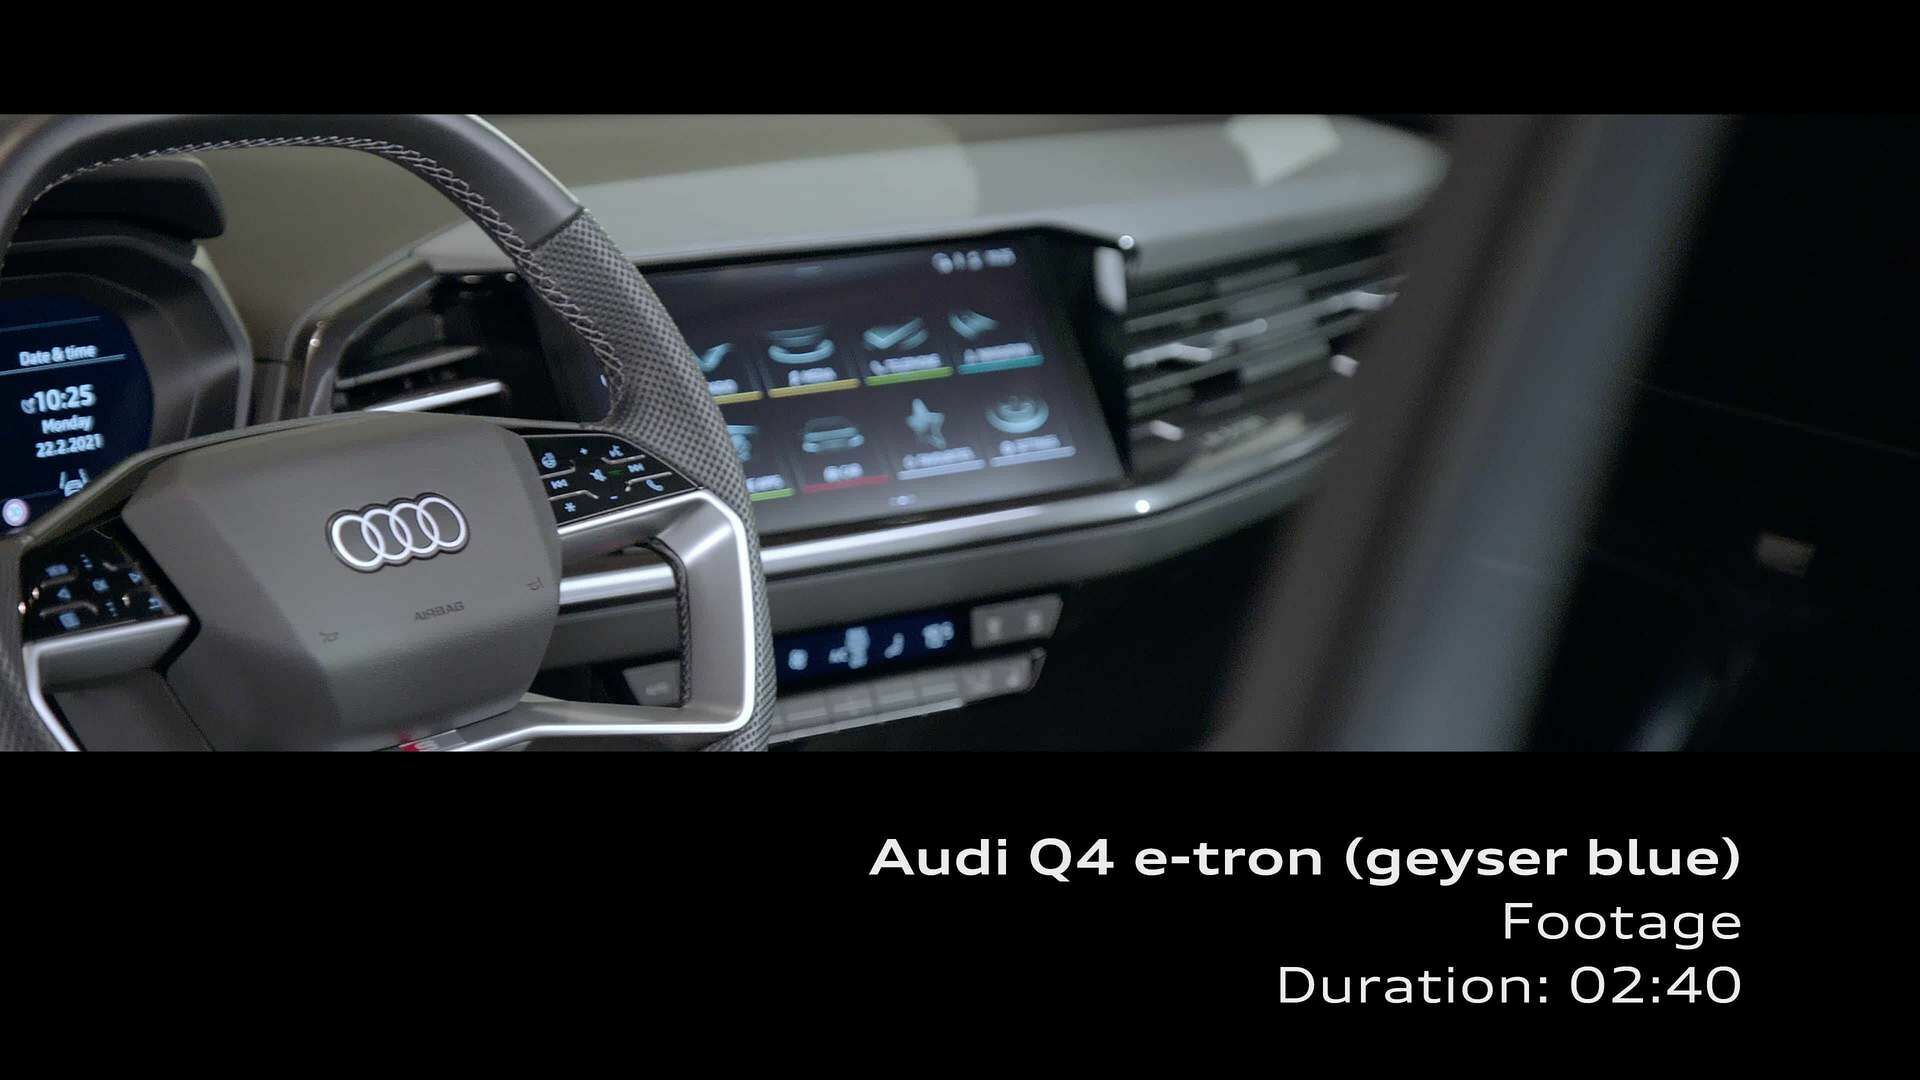 Footage: das Interieur des Audi Q4 e-tron